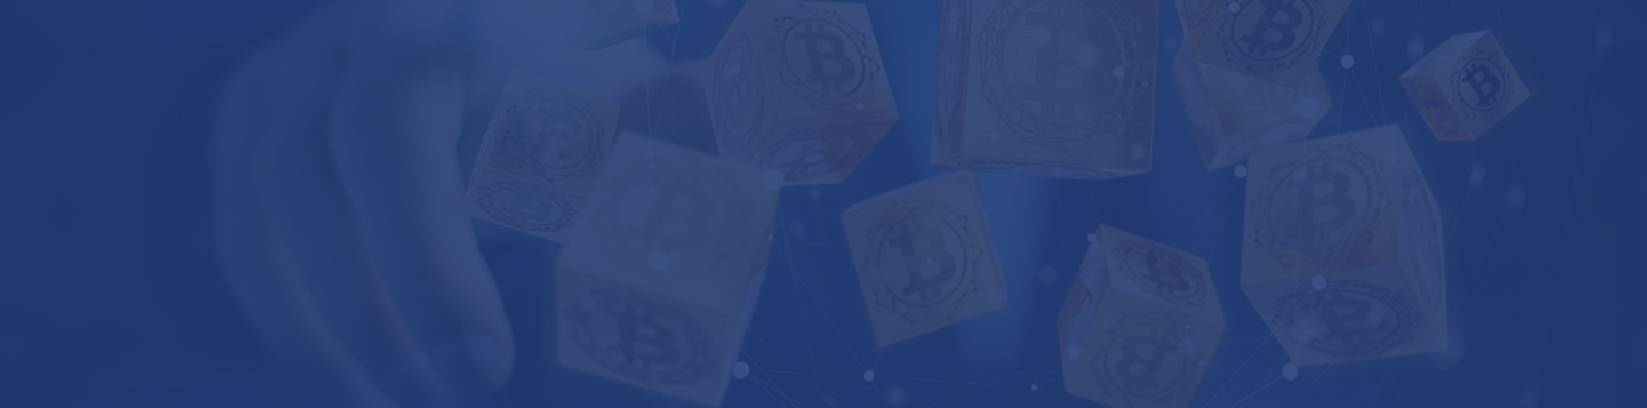 Bitcoin Treasure - ビットコインの宝物と取引する